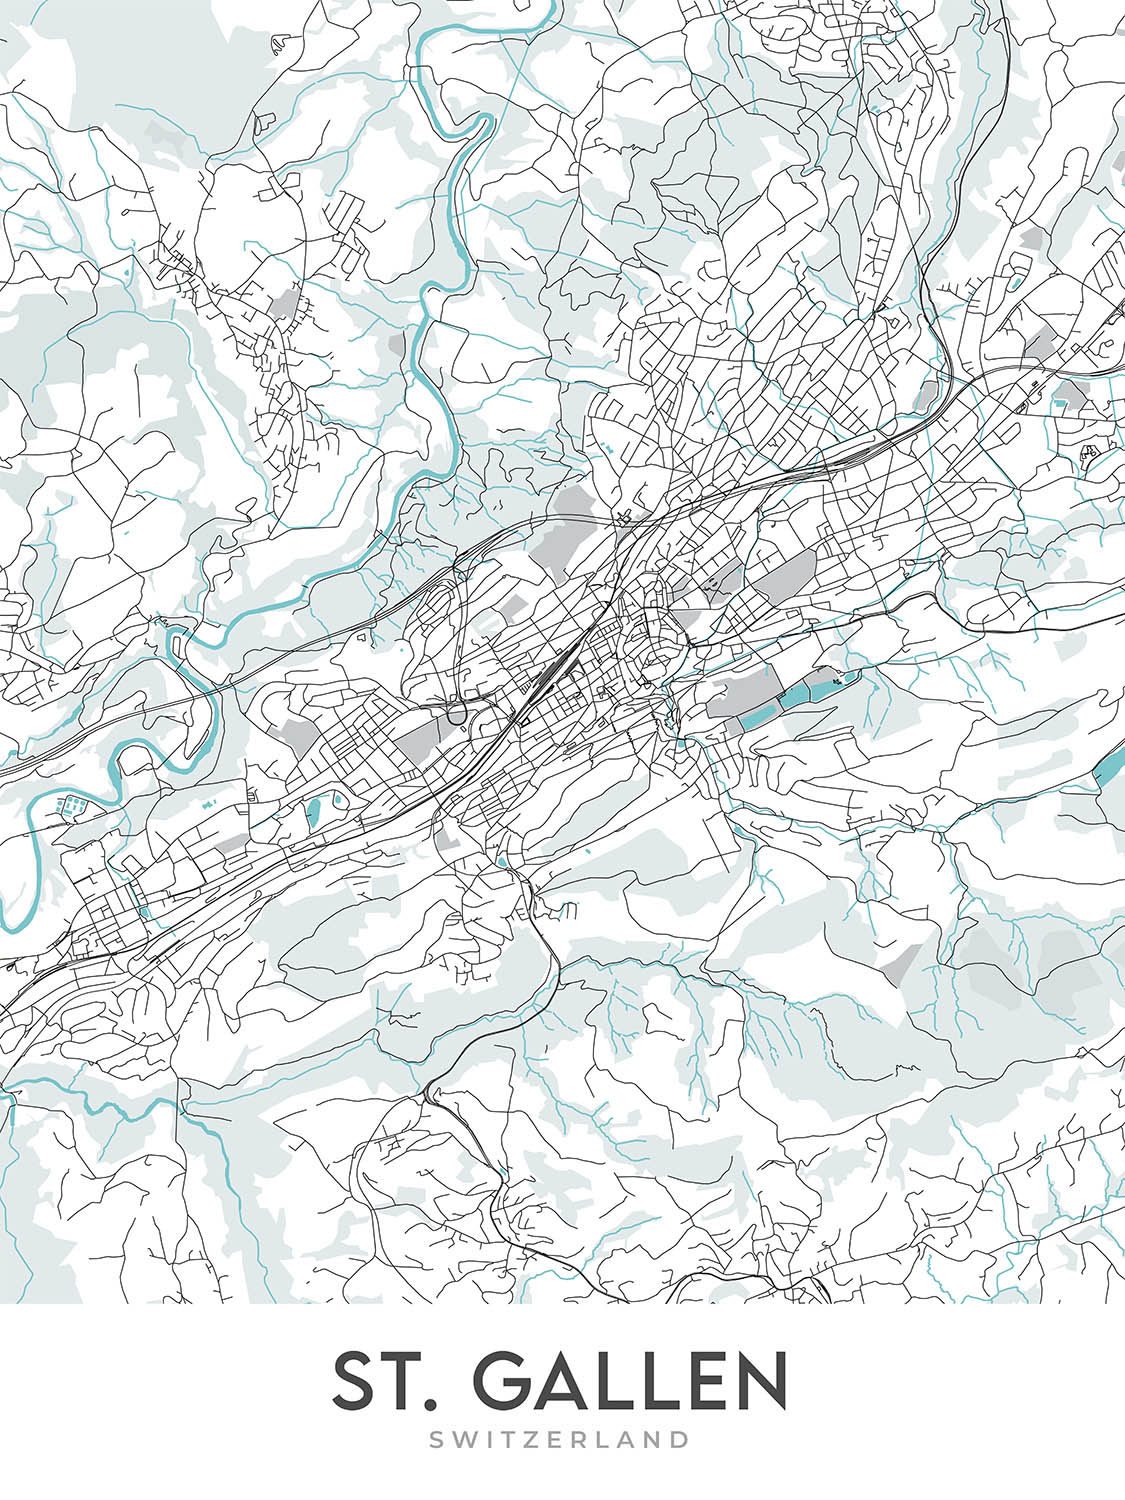 Mapa moderno de la ciudad de St. Gallen, Suiza: Abadía, Catedral, Universidad